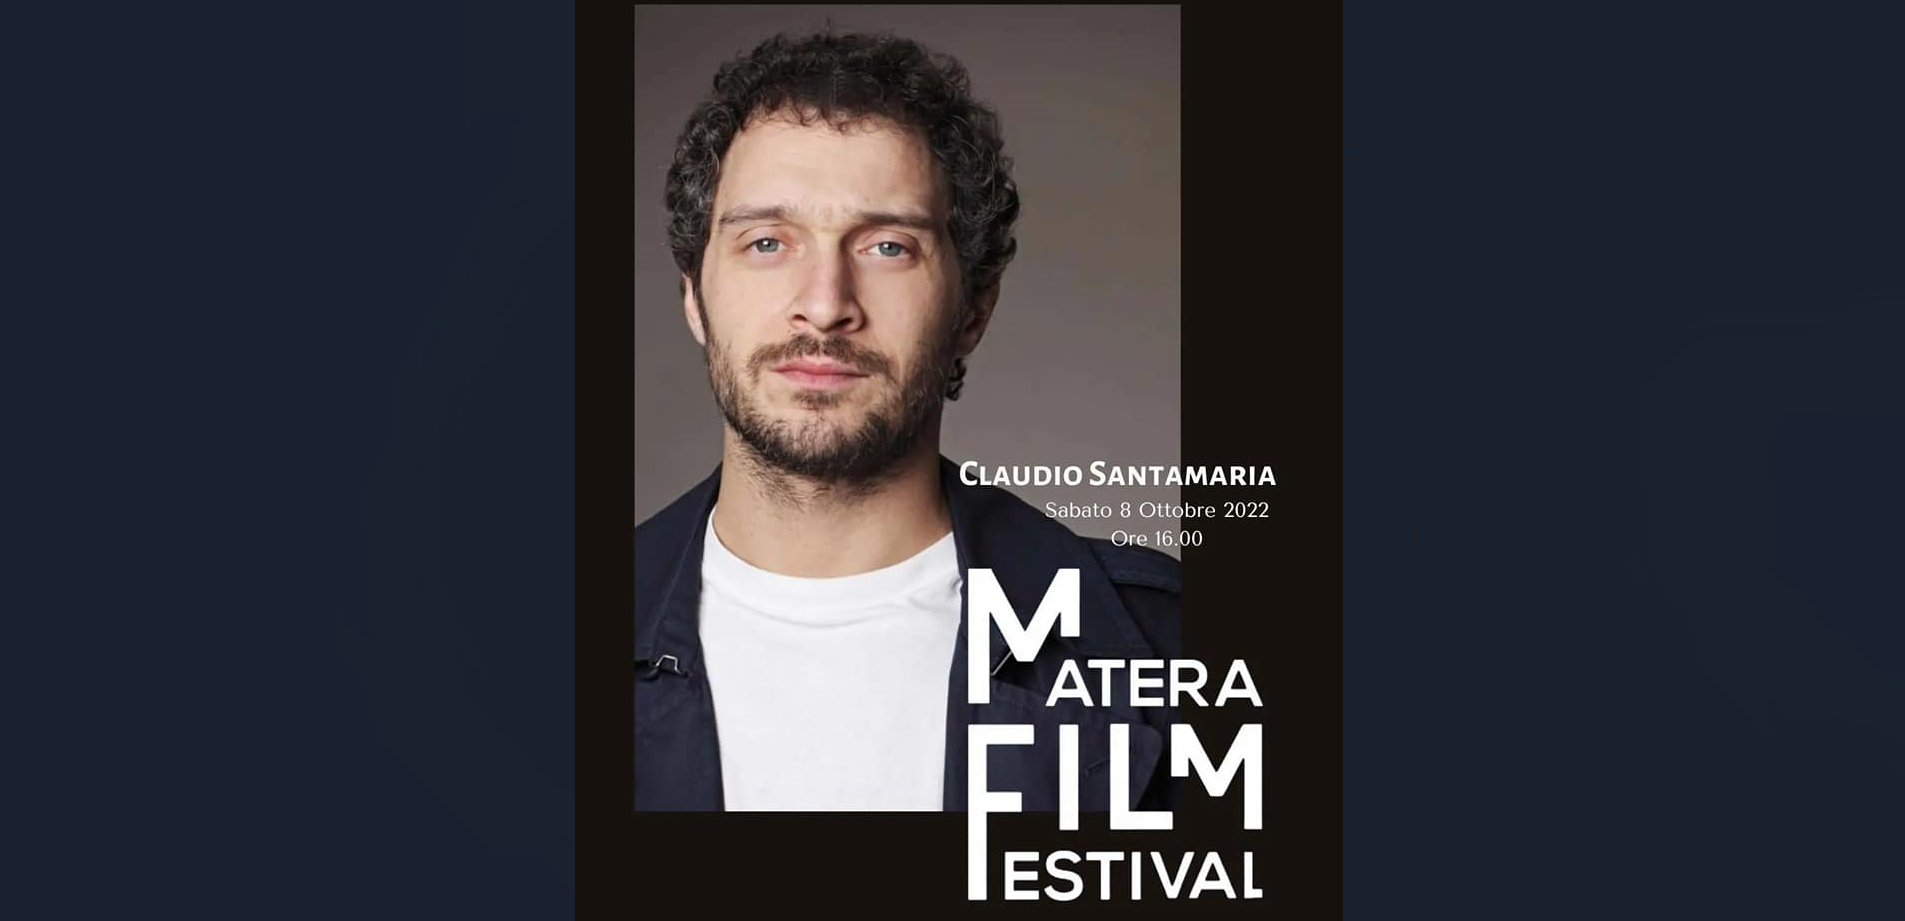 Cala il sipario sul Matera Film Festival. Special guest, domani, Claudio Santamaria